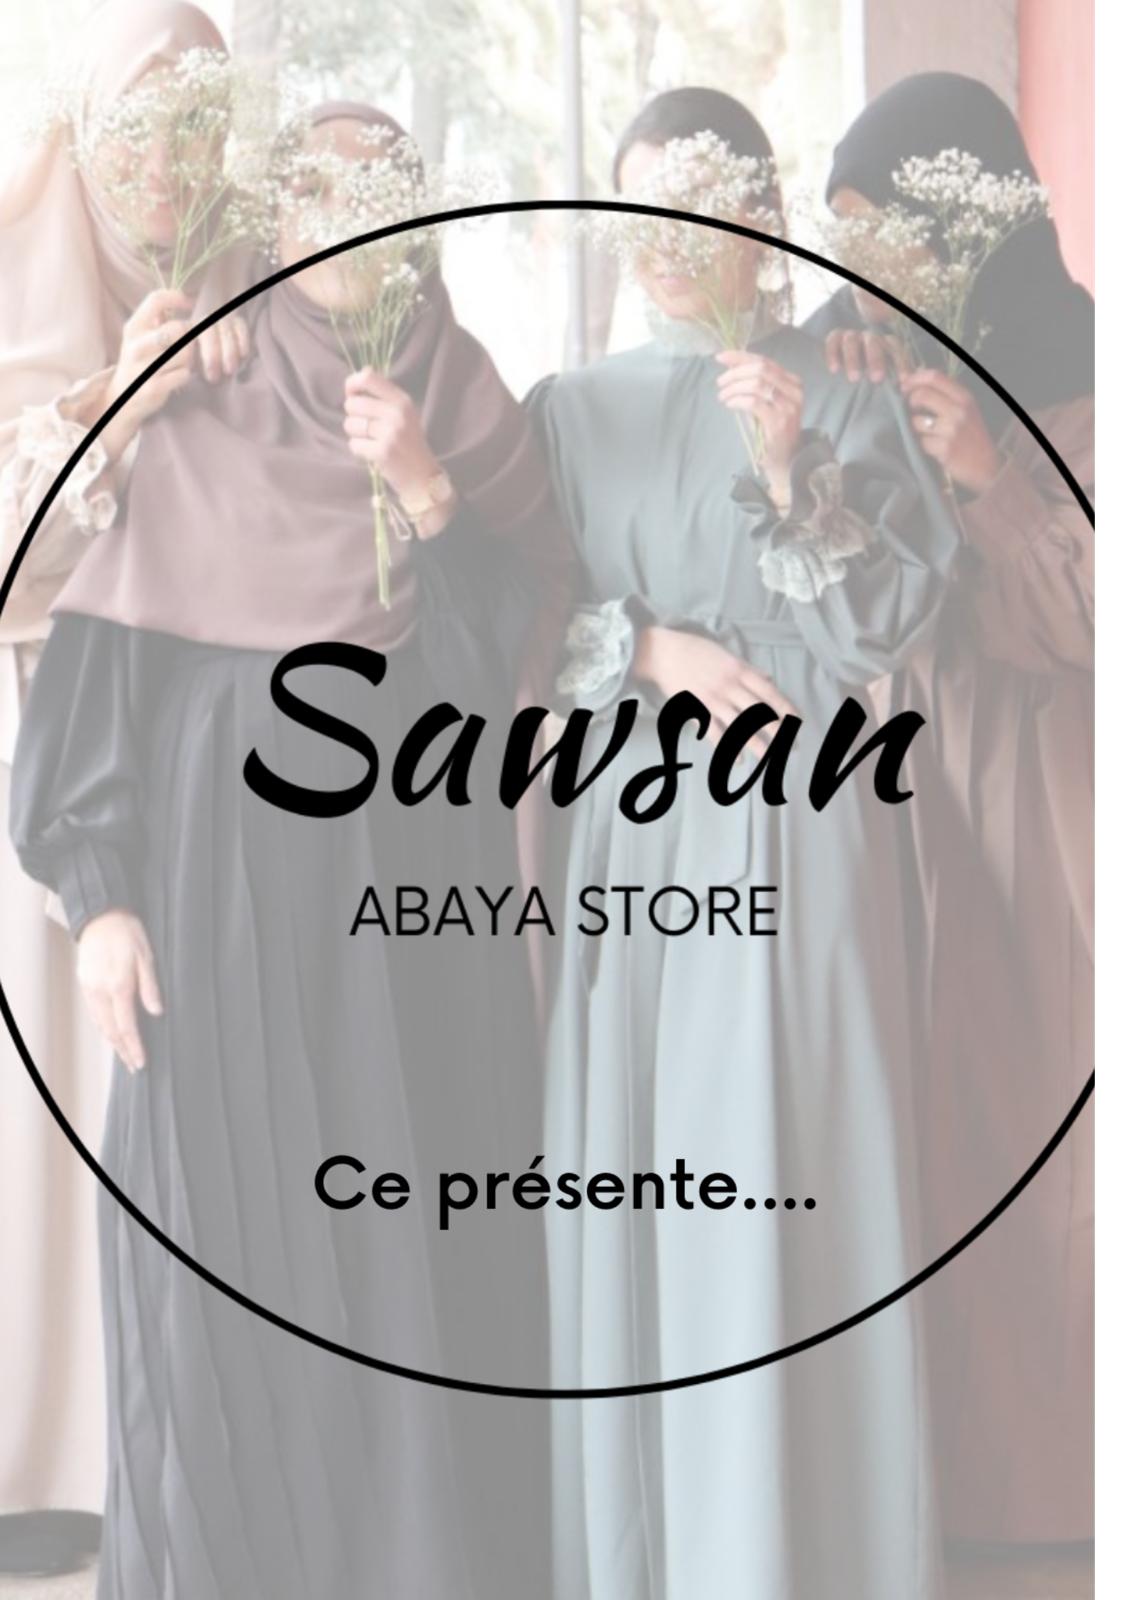 Sawsan Abaya Store  ©